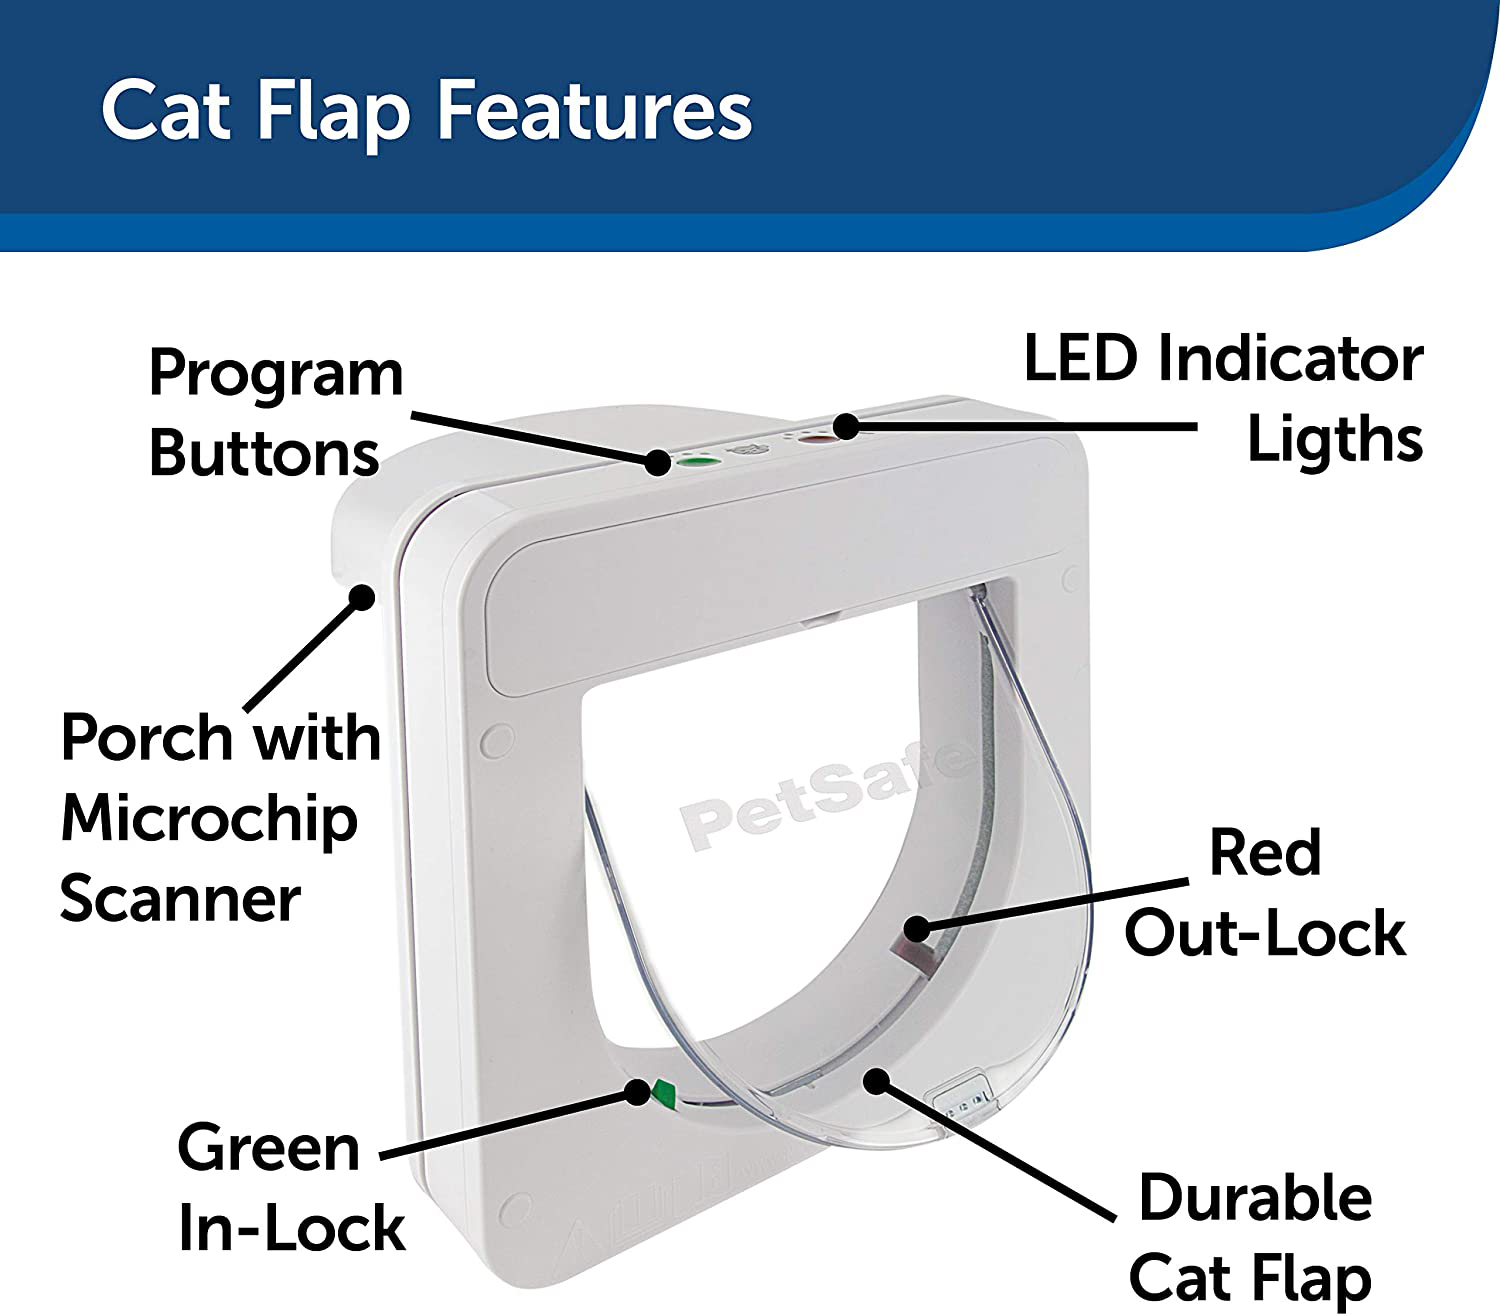 از یک حسگر نور داخلی استفاده می‌کند که دسترسی فقط برای گربه‌های مجاز را در هنگام غروب فعال می‌کند و به‌طور خودکار اجازه خروج آزاد در سپیده‌دم را می‌دهد.